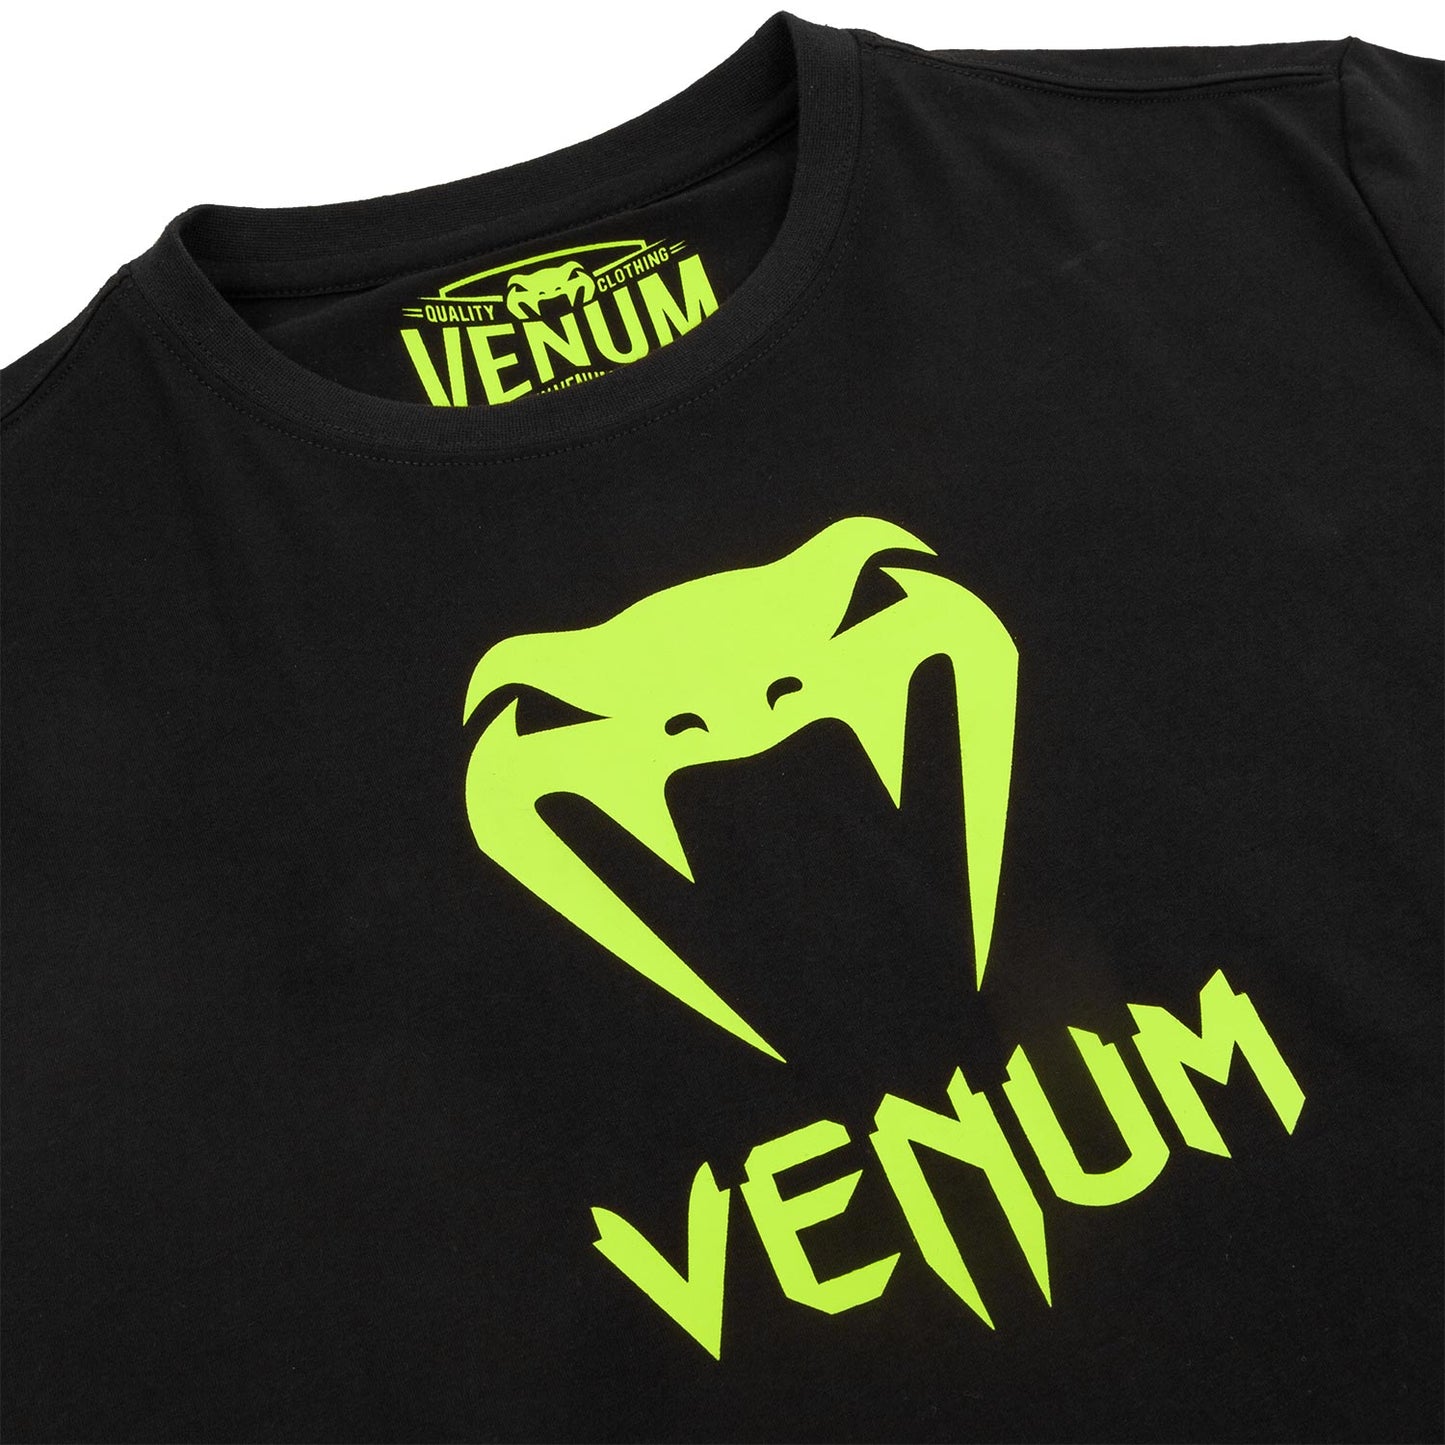 Venum Classic T-shirt - Black/Neo Yellow